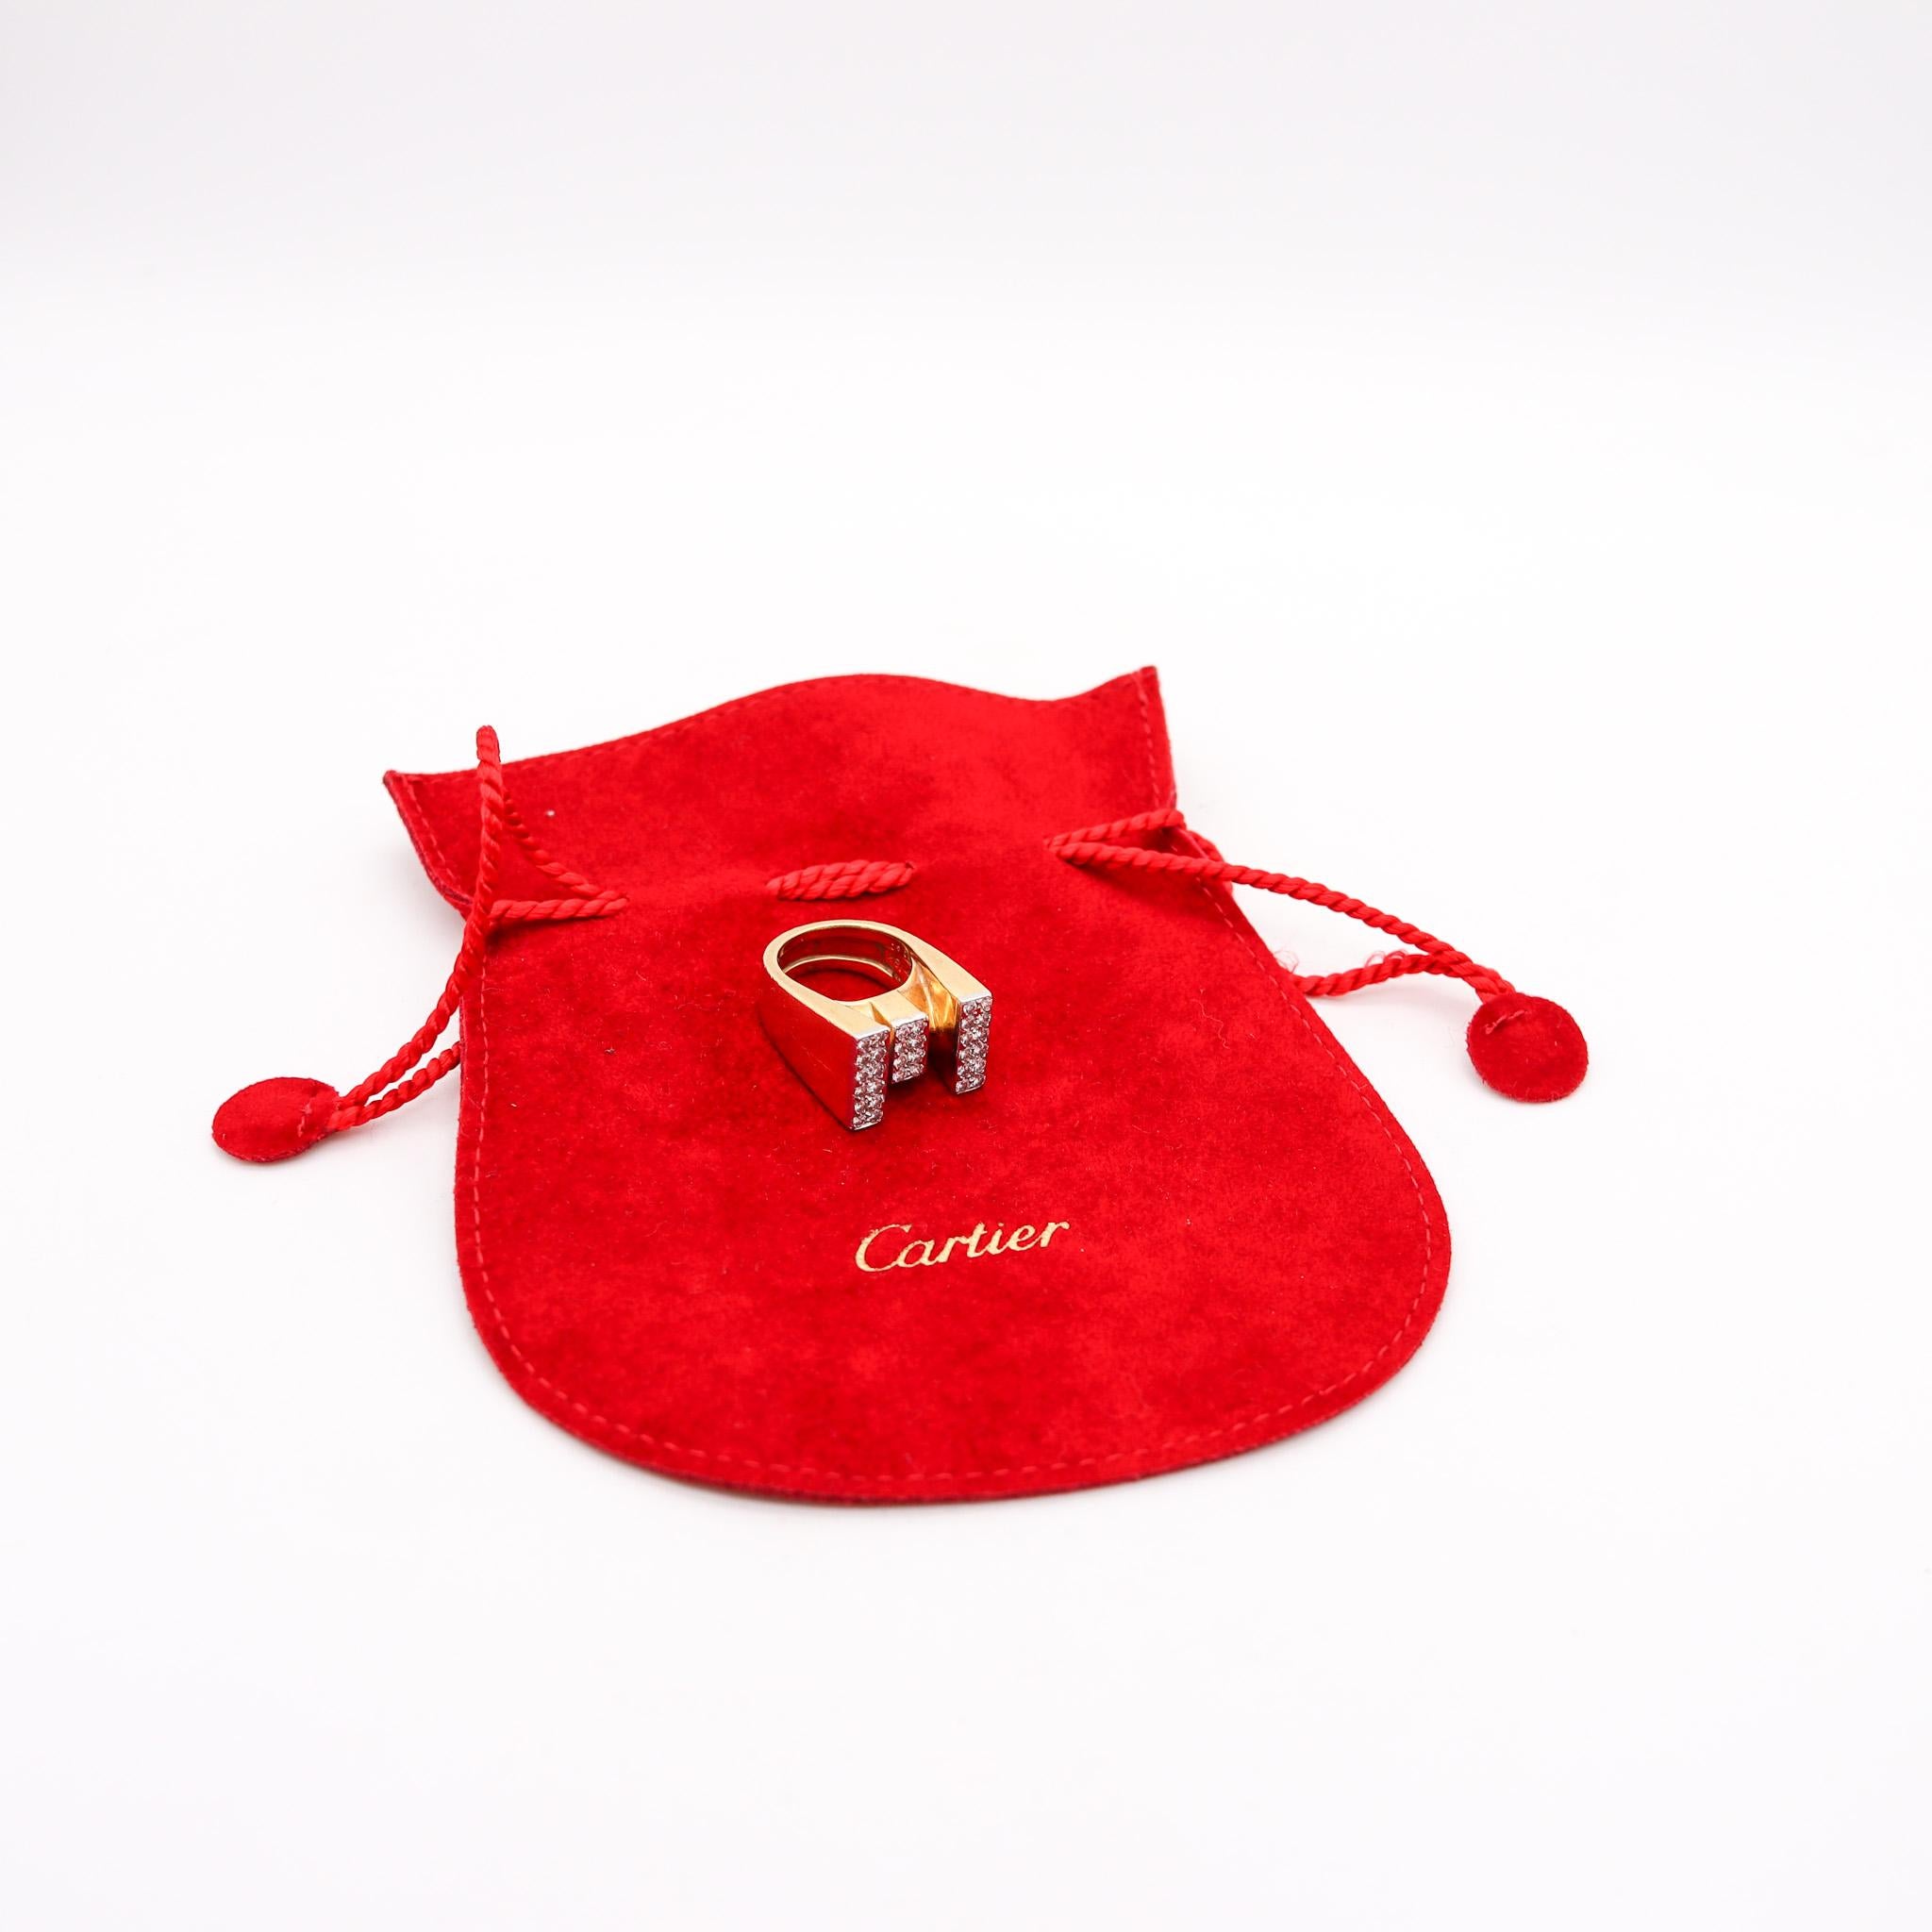 Geometrischer Cocktailring, entworfen von Cartier.

Bei diesem seltenen Cocktailring dreht sich alles um Geometrie und Volumen. Dieser Ring wird Roger Lucas für das Schmuckhaus Cartier in den 1970er Jahren zugeschrieben und sorgfältig mit einem